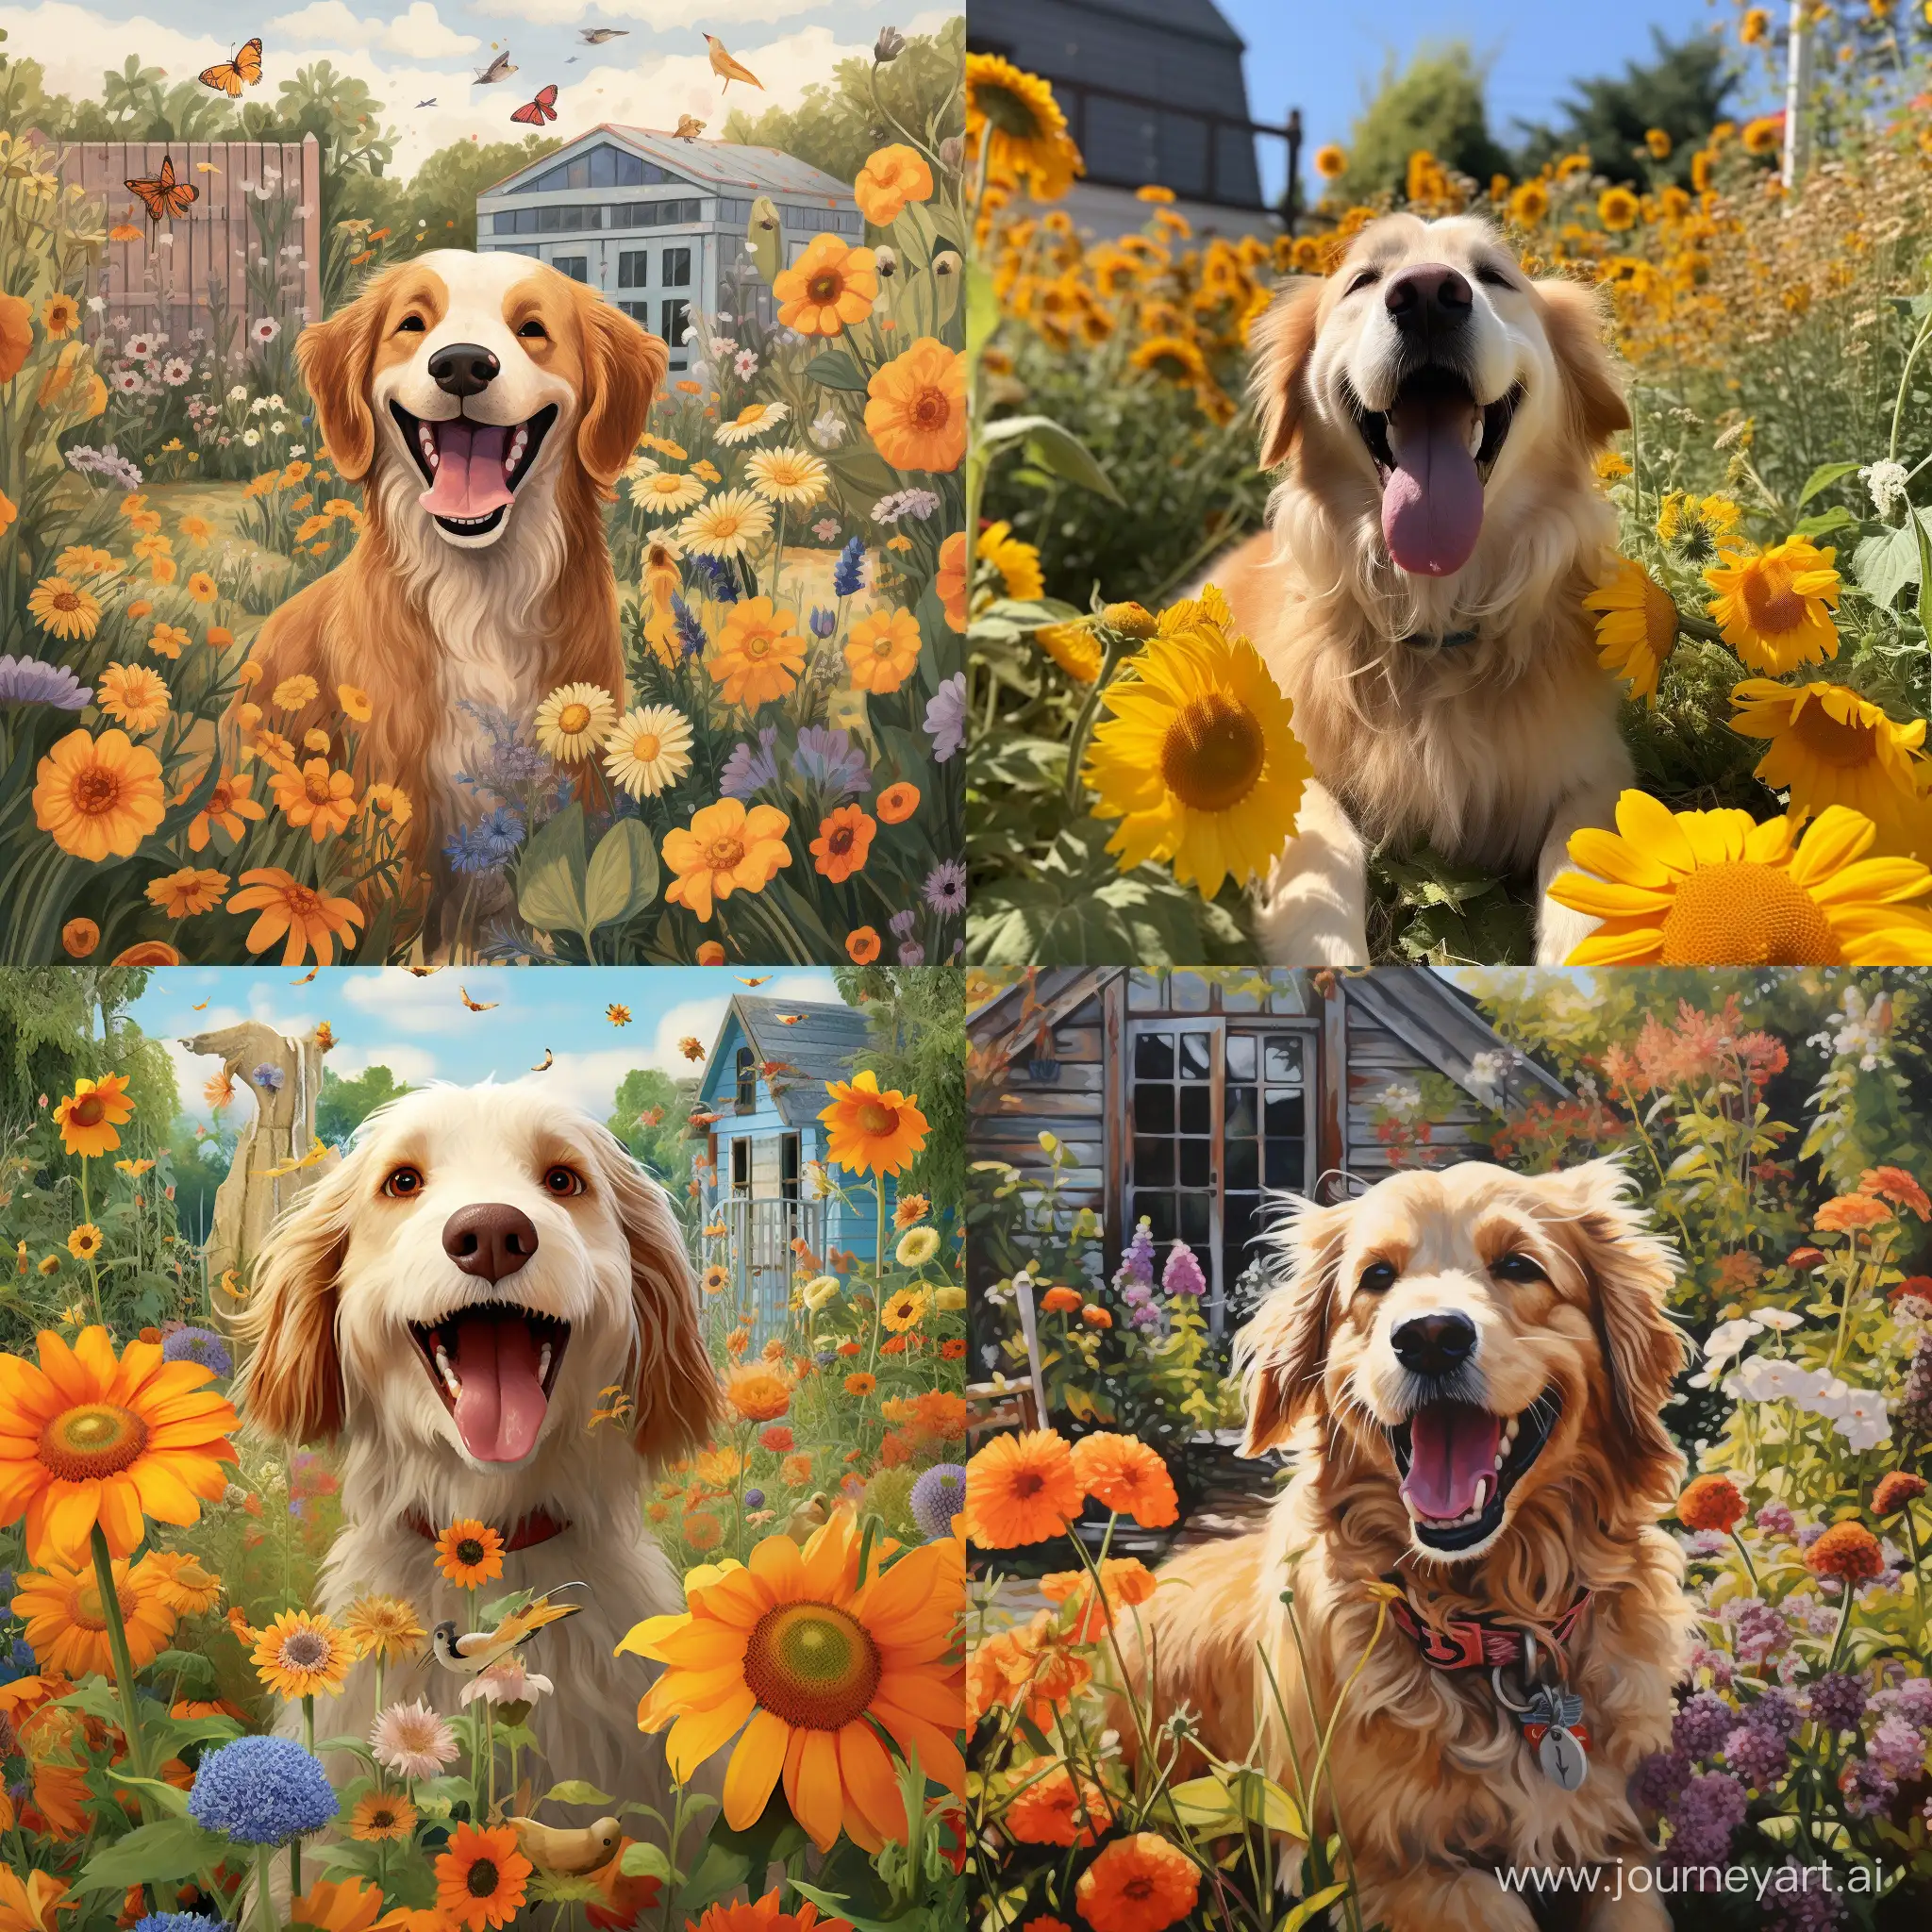 Joyful-Canine-Frolicking-in-Lush-Garden-Oasis